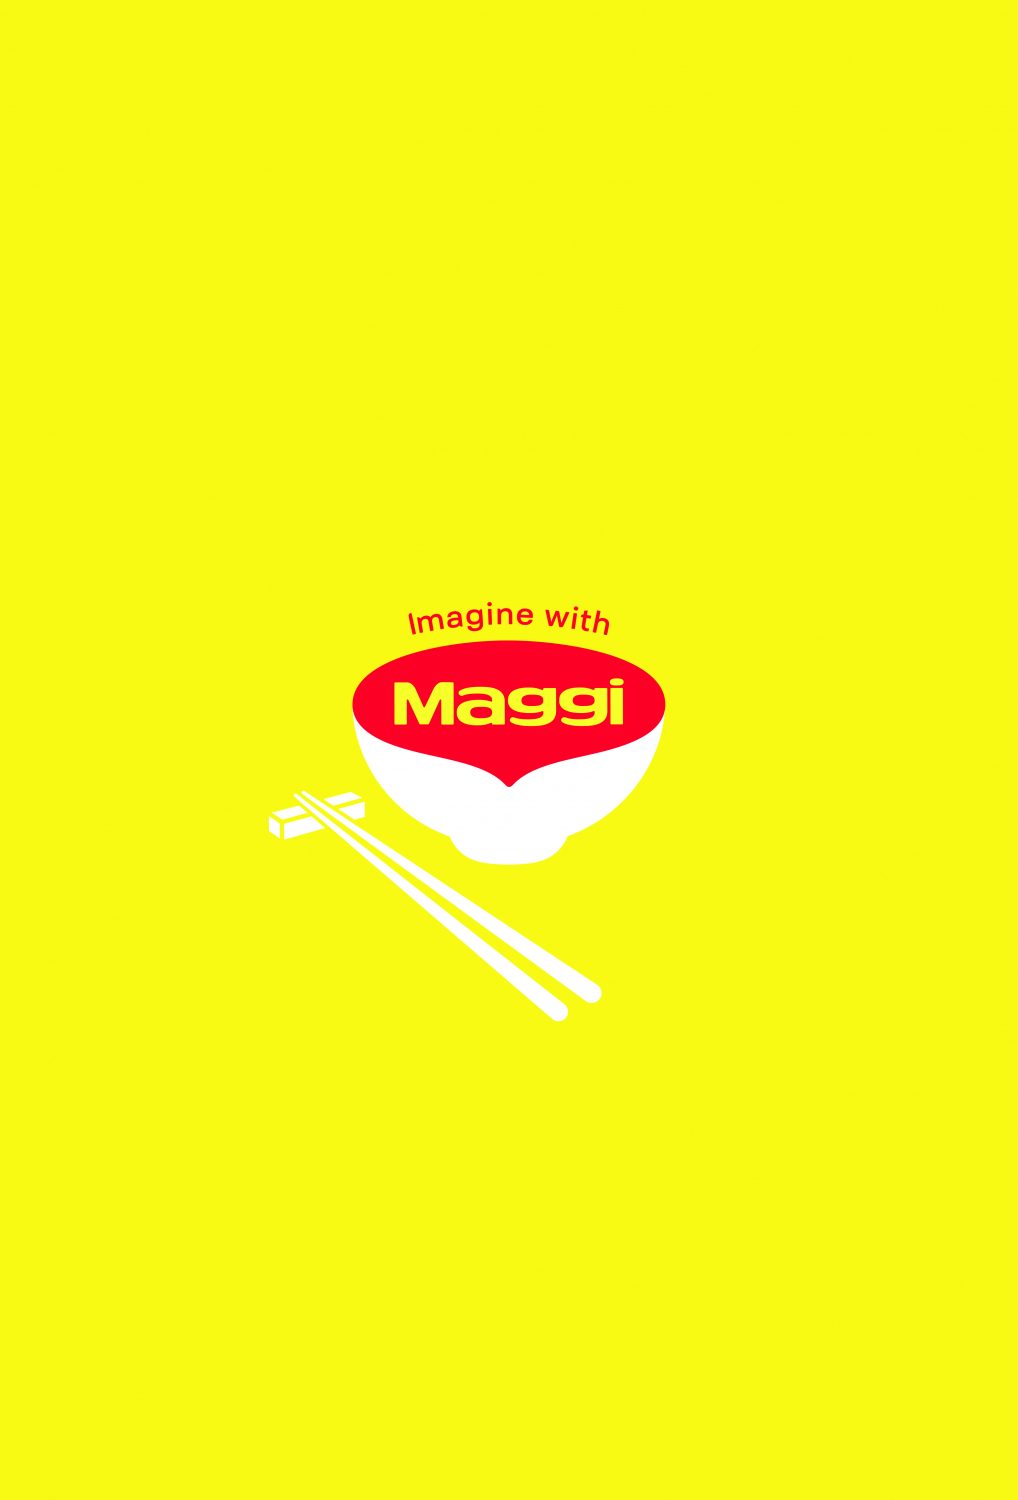 2021-Nestle Maggi-Imagine With Maggi-Poster 02-Publicis Brazil-jpg